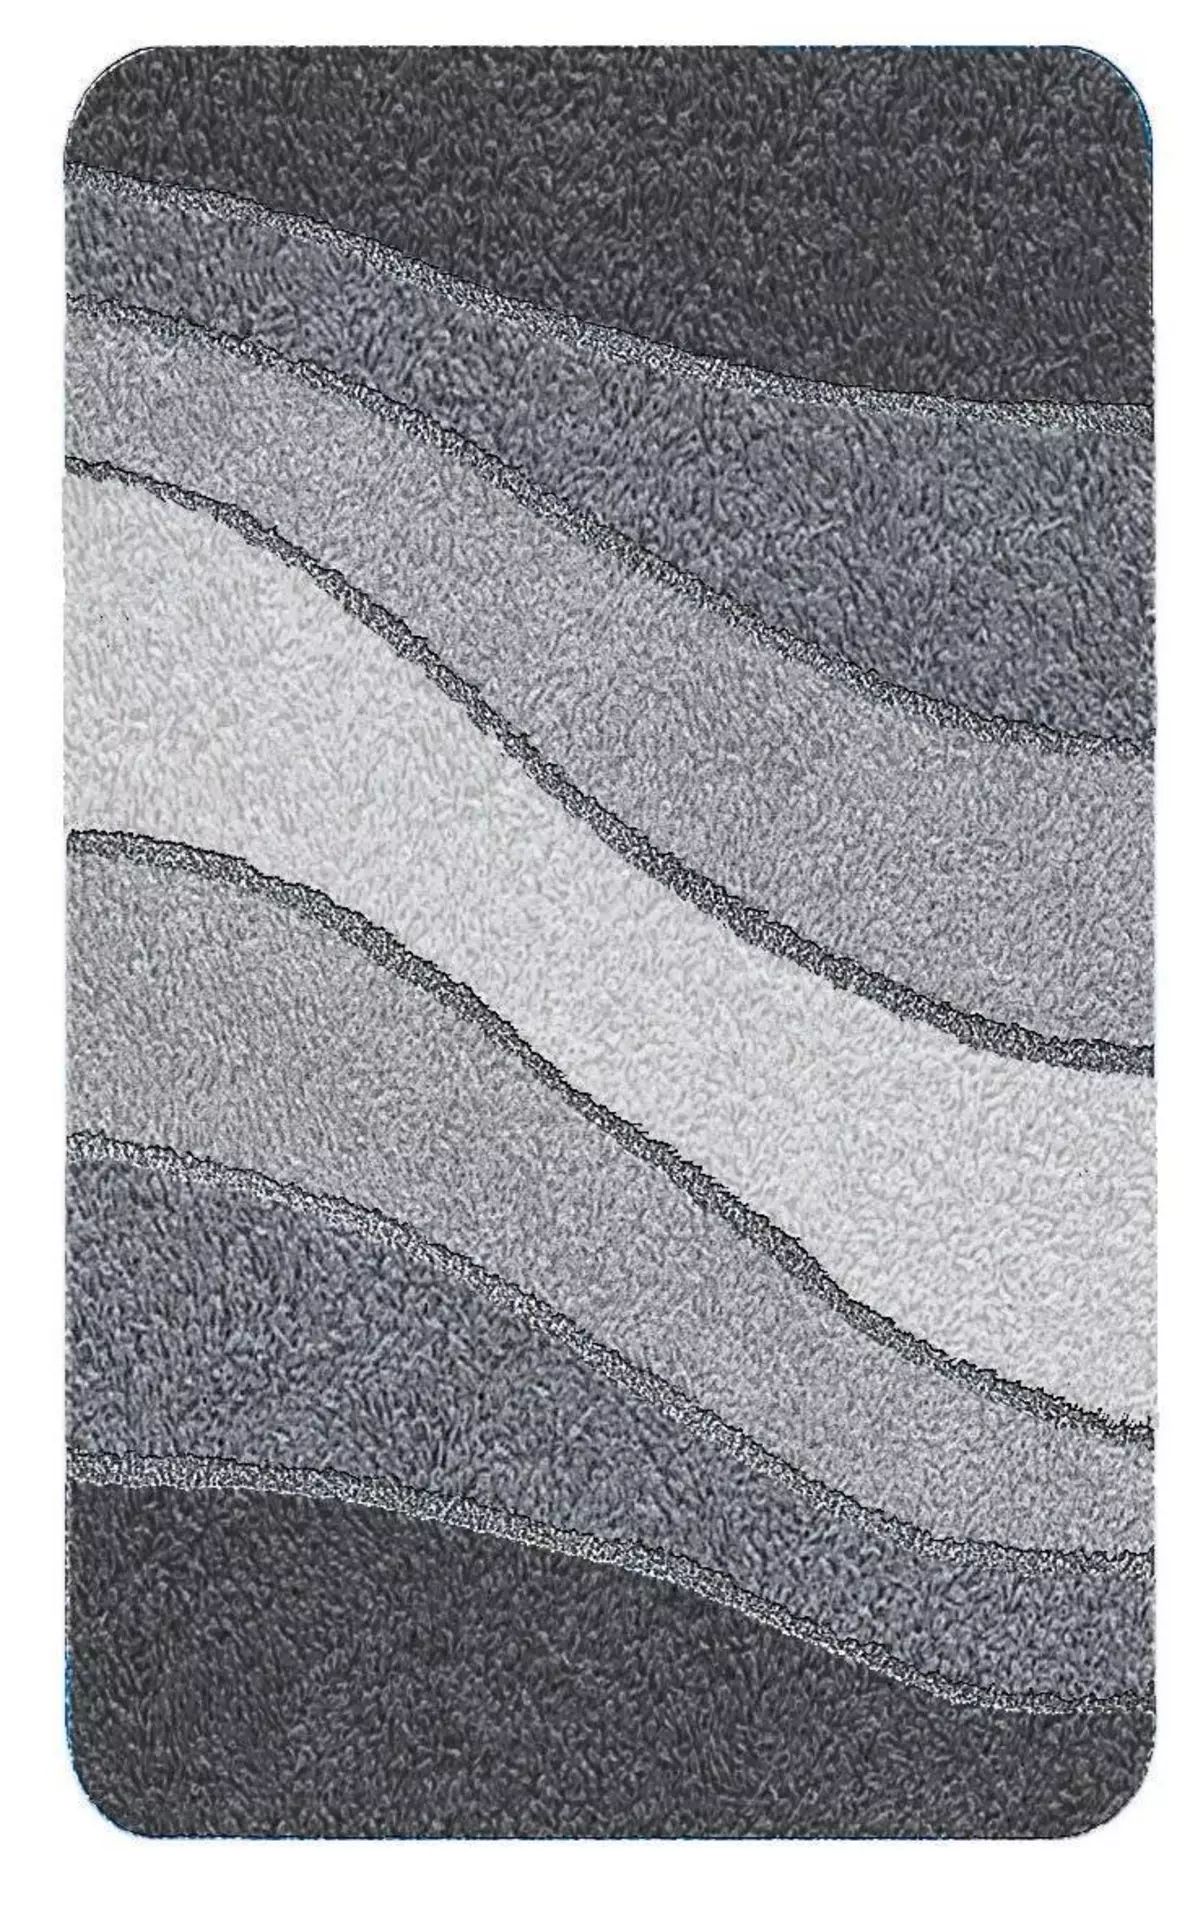 Badteppich Ocean Meusch Textil 150 x 2 x 80 cm